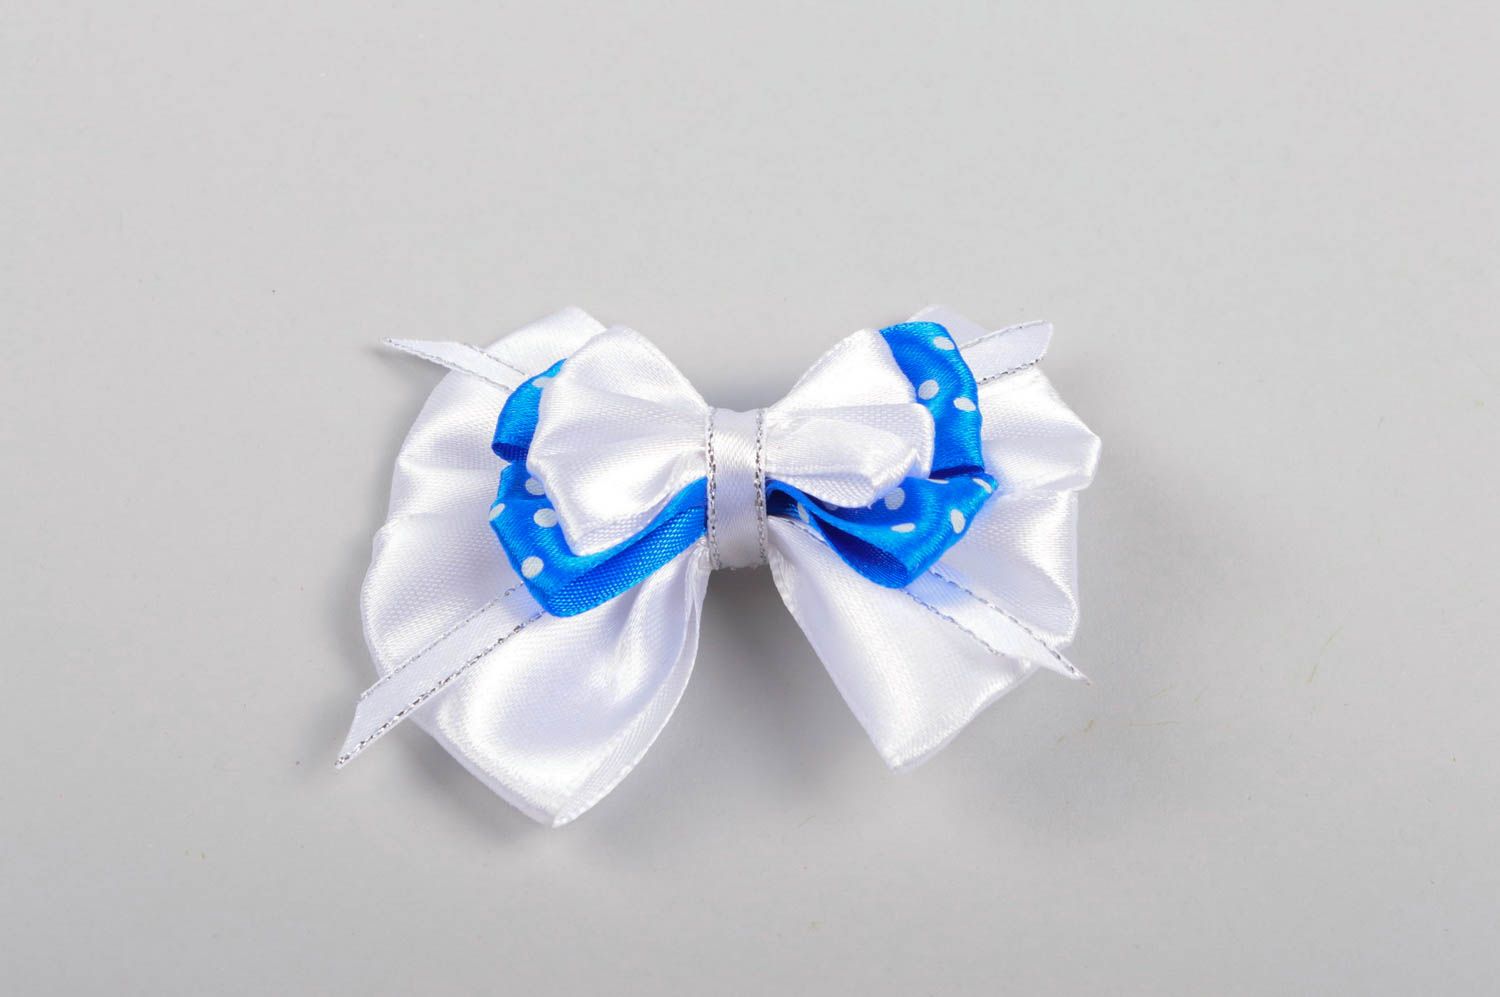 Handmade Kinder Haarspange Mädchen Haarschmuck Mode Accessoire weiß blau schön foto 2